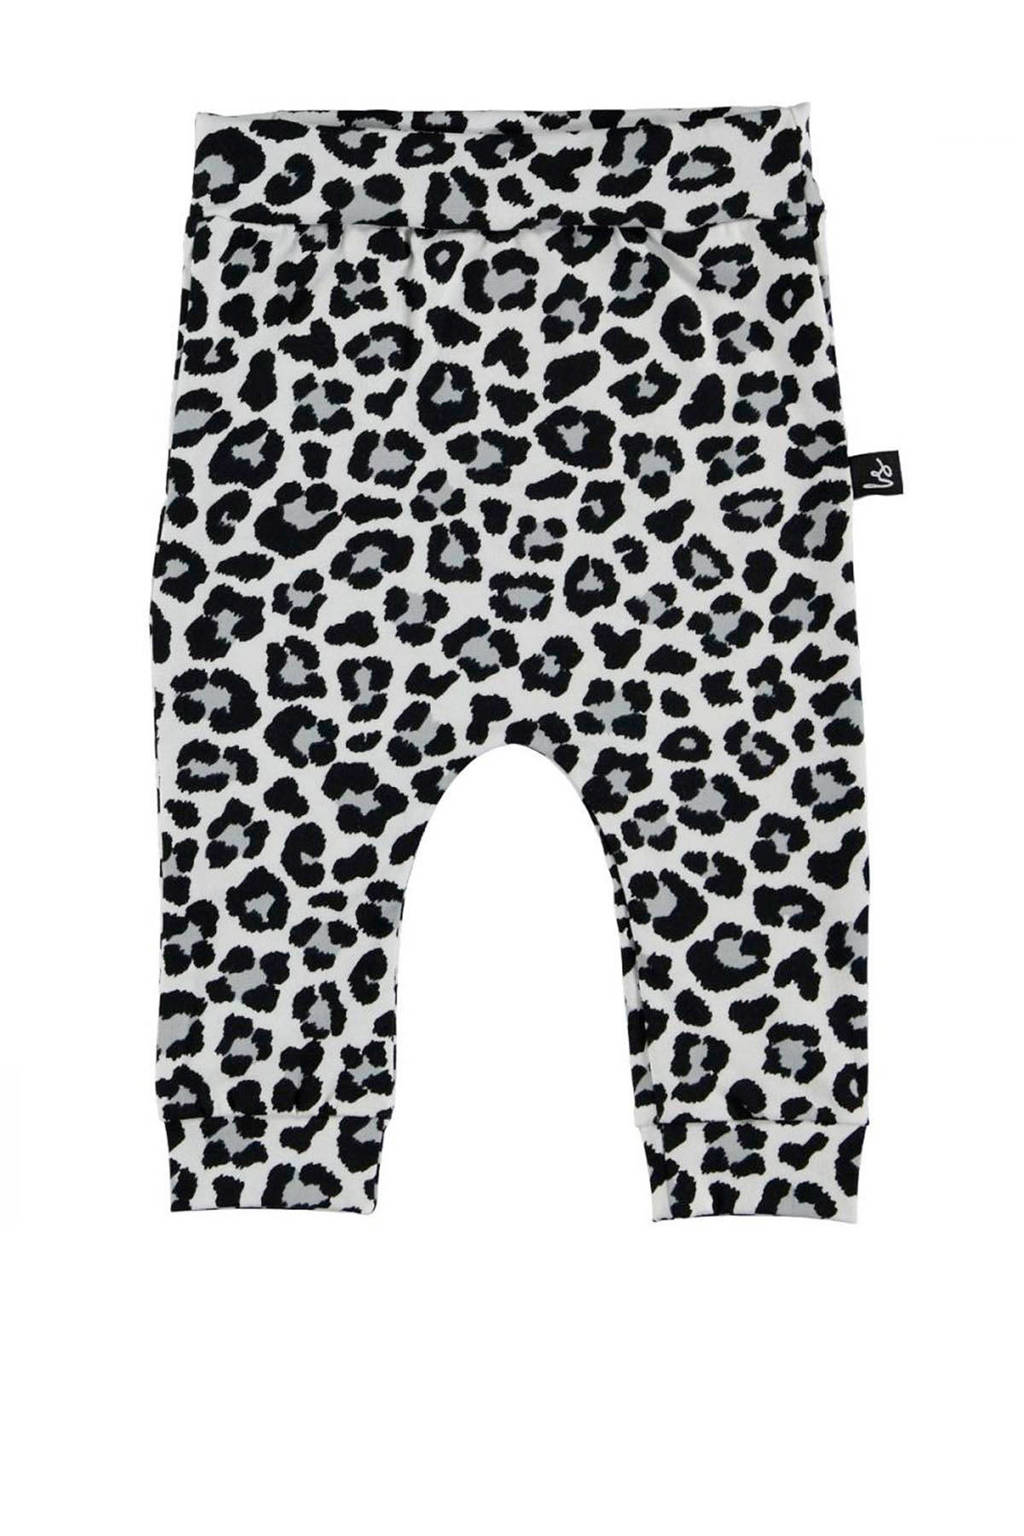 Babystyling baby broek met panterprint wit/grijs/zwart, Wit/grijs/zwart